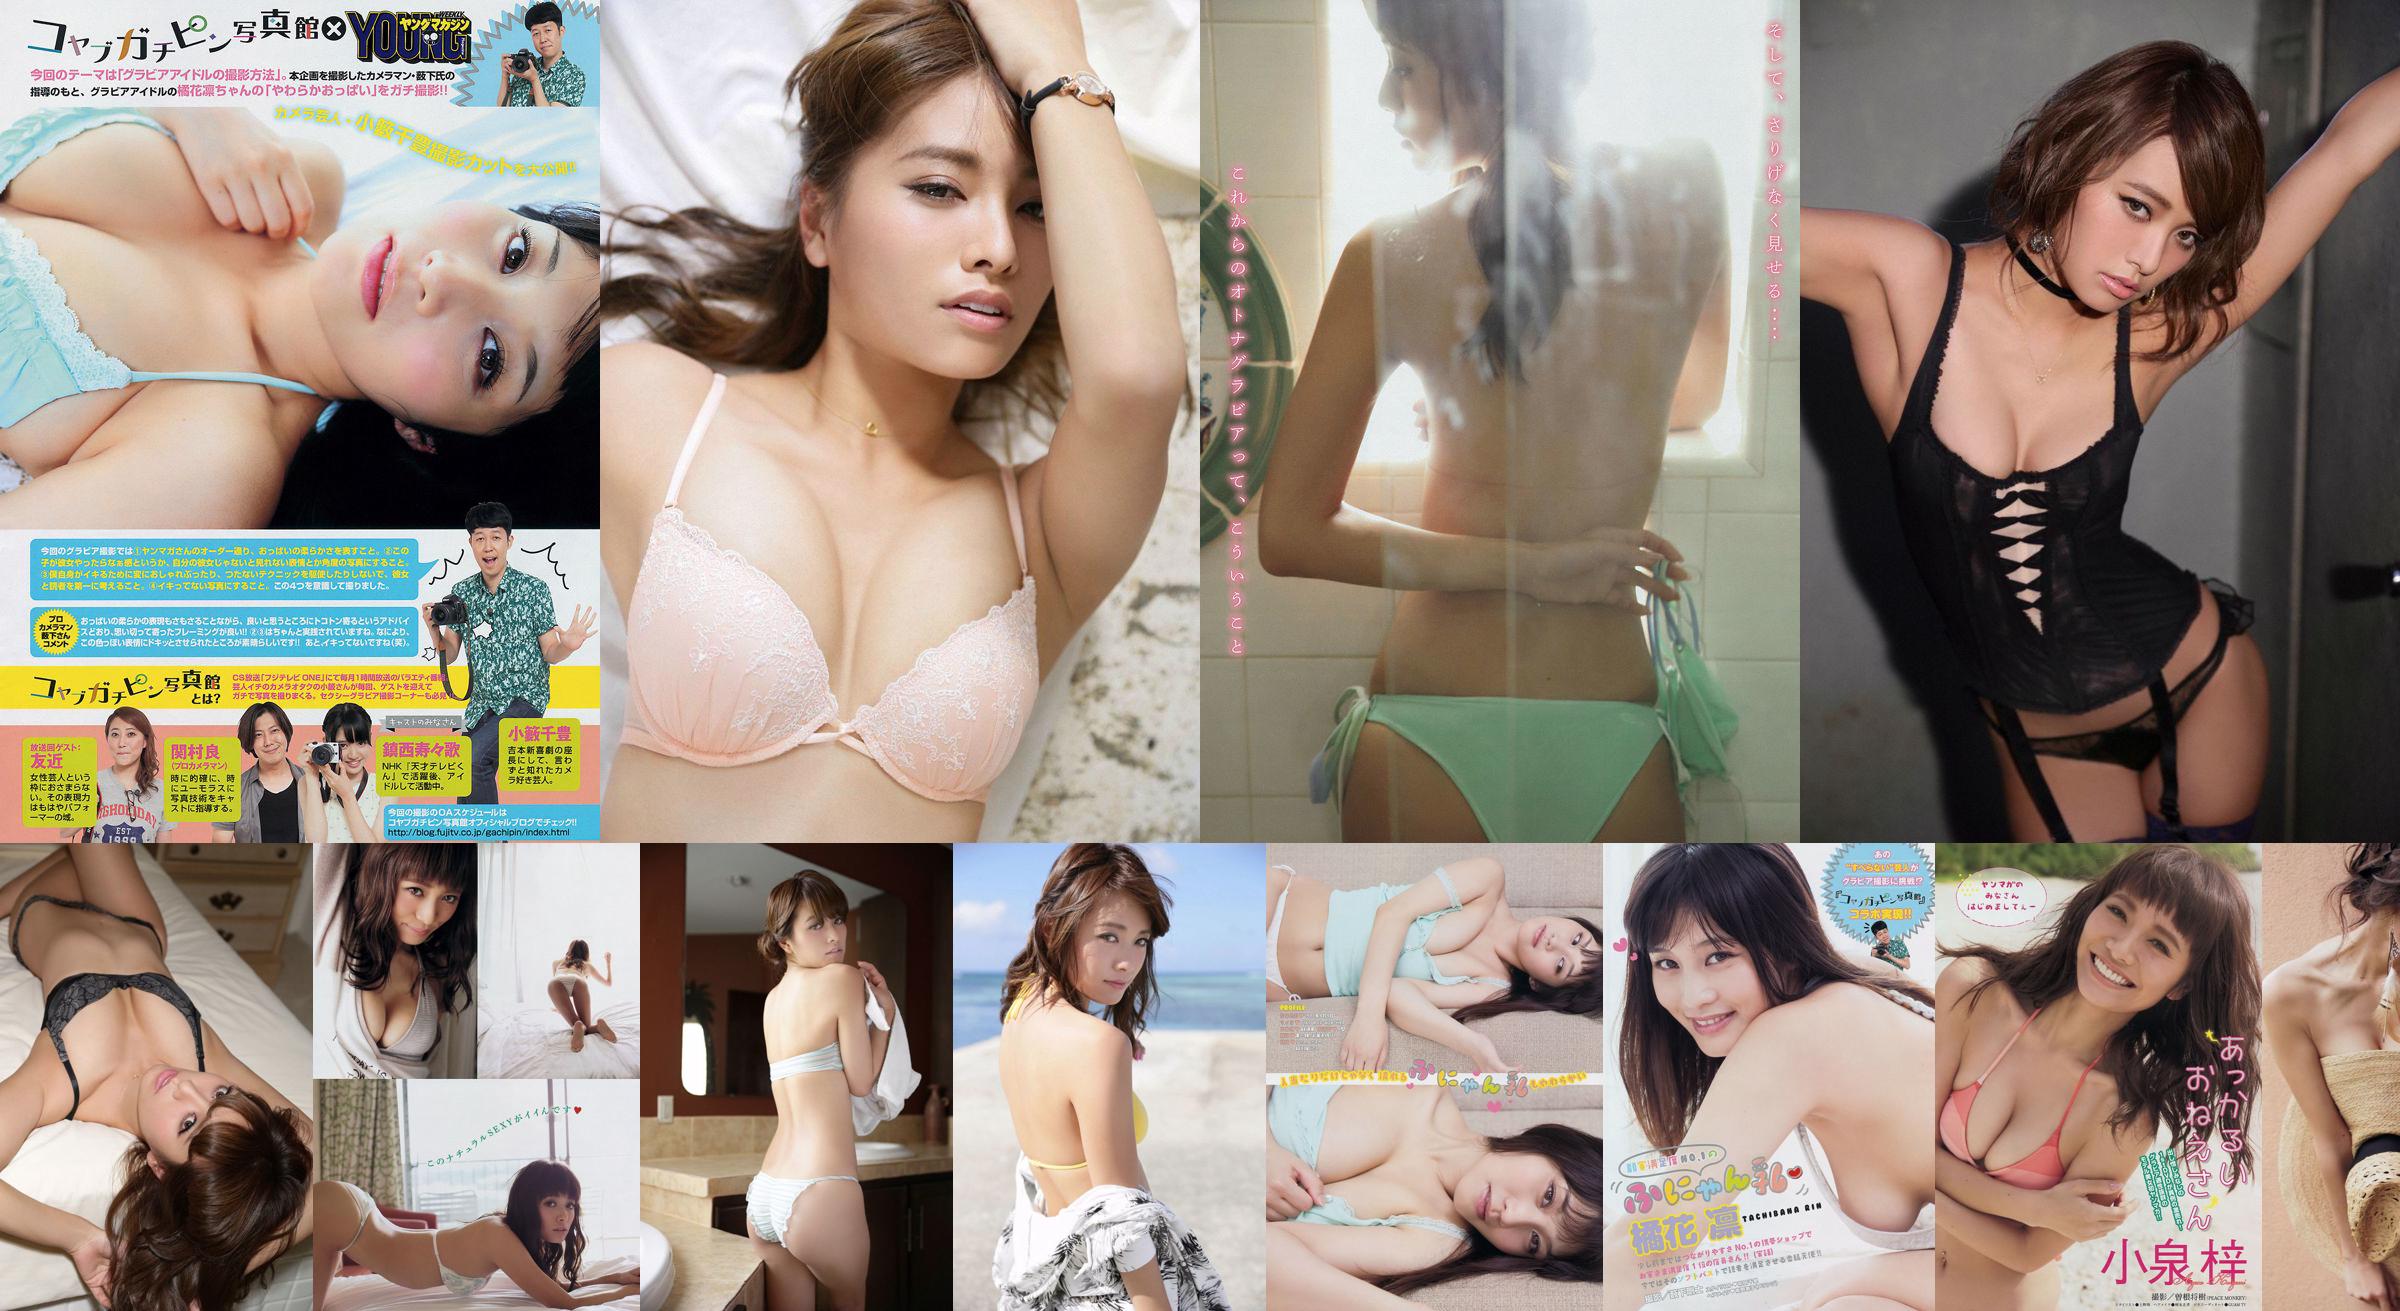 [Majalah Muda] Azusa Koizumi Tachibana Rin 2014 Majalah Foto No.43 No.edb2d7 Halaman 1